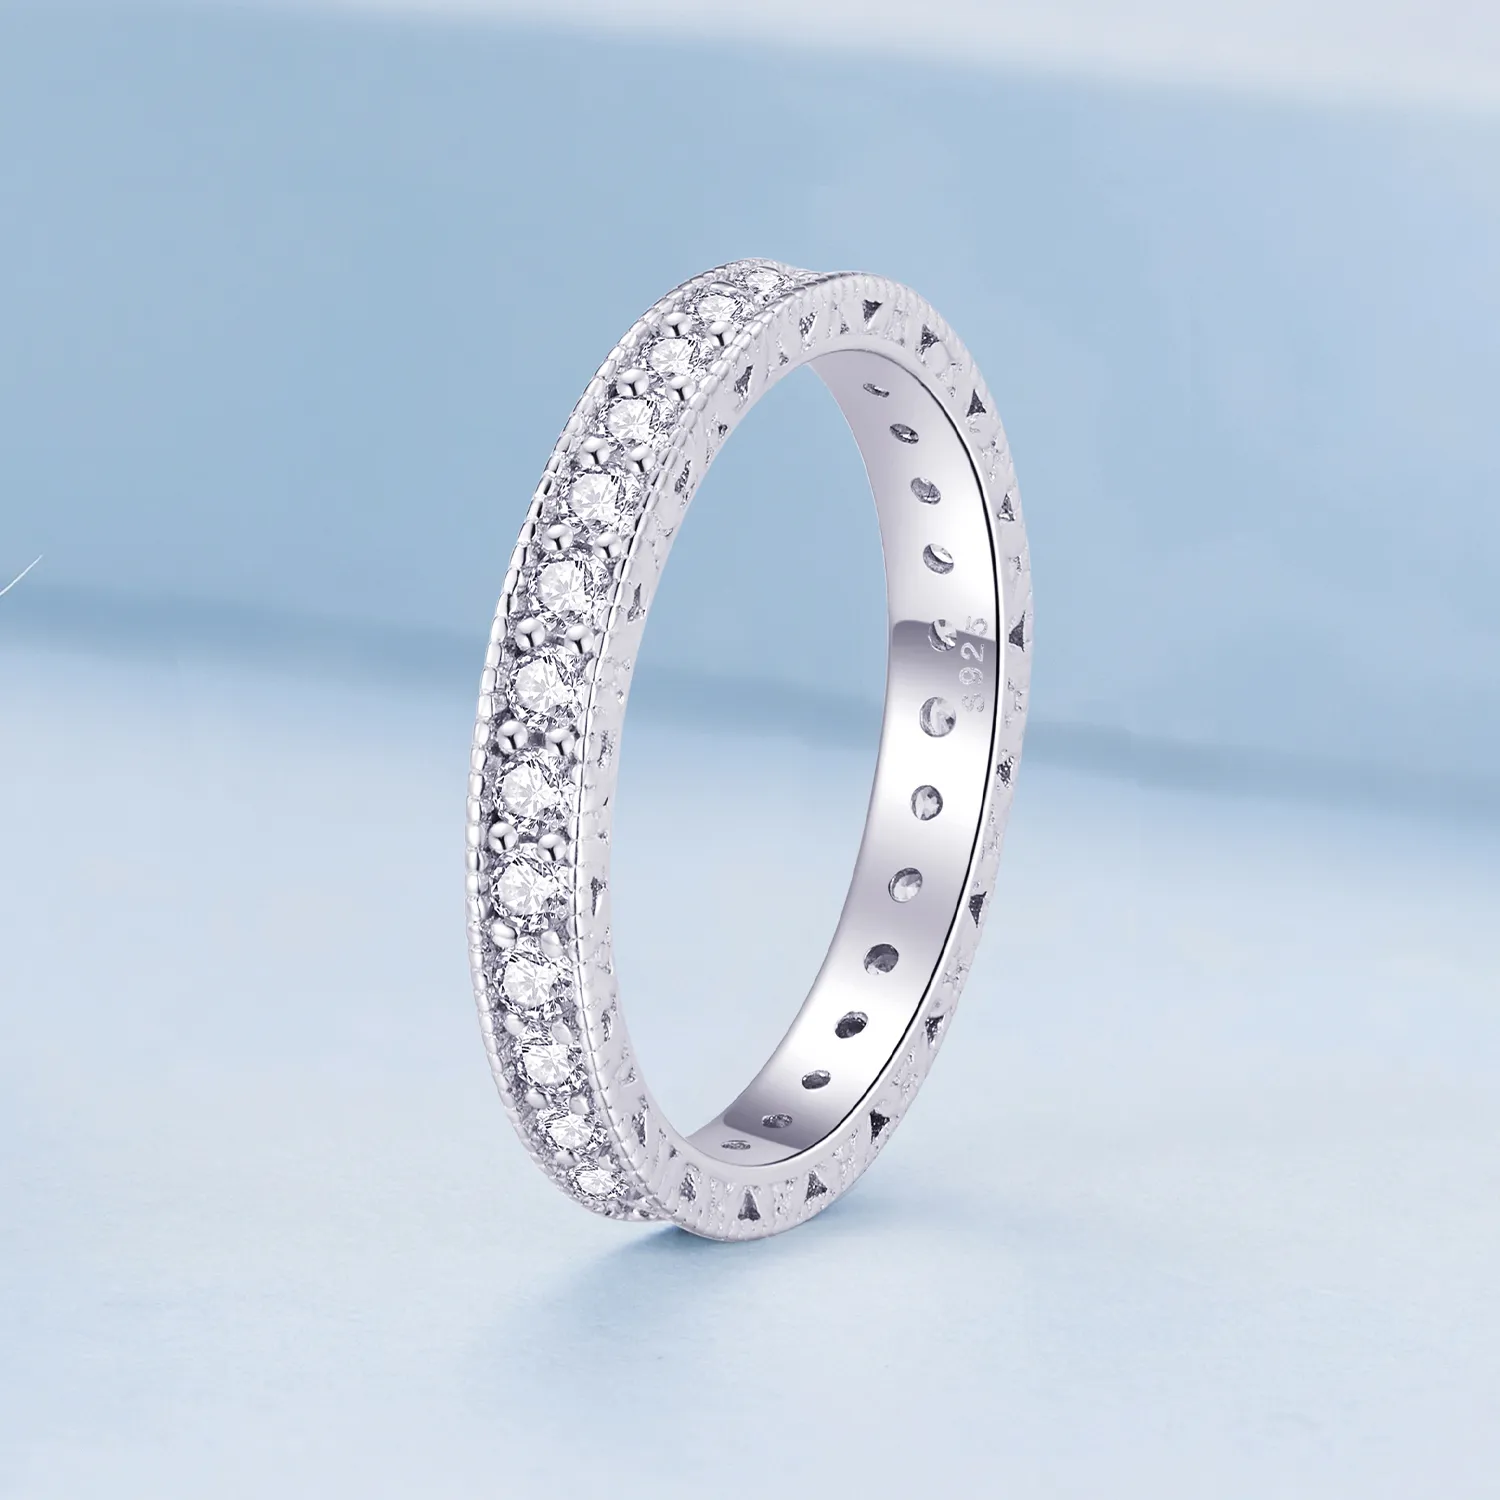 Pandora Style Shining Ring - BSR462